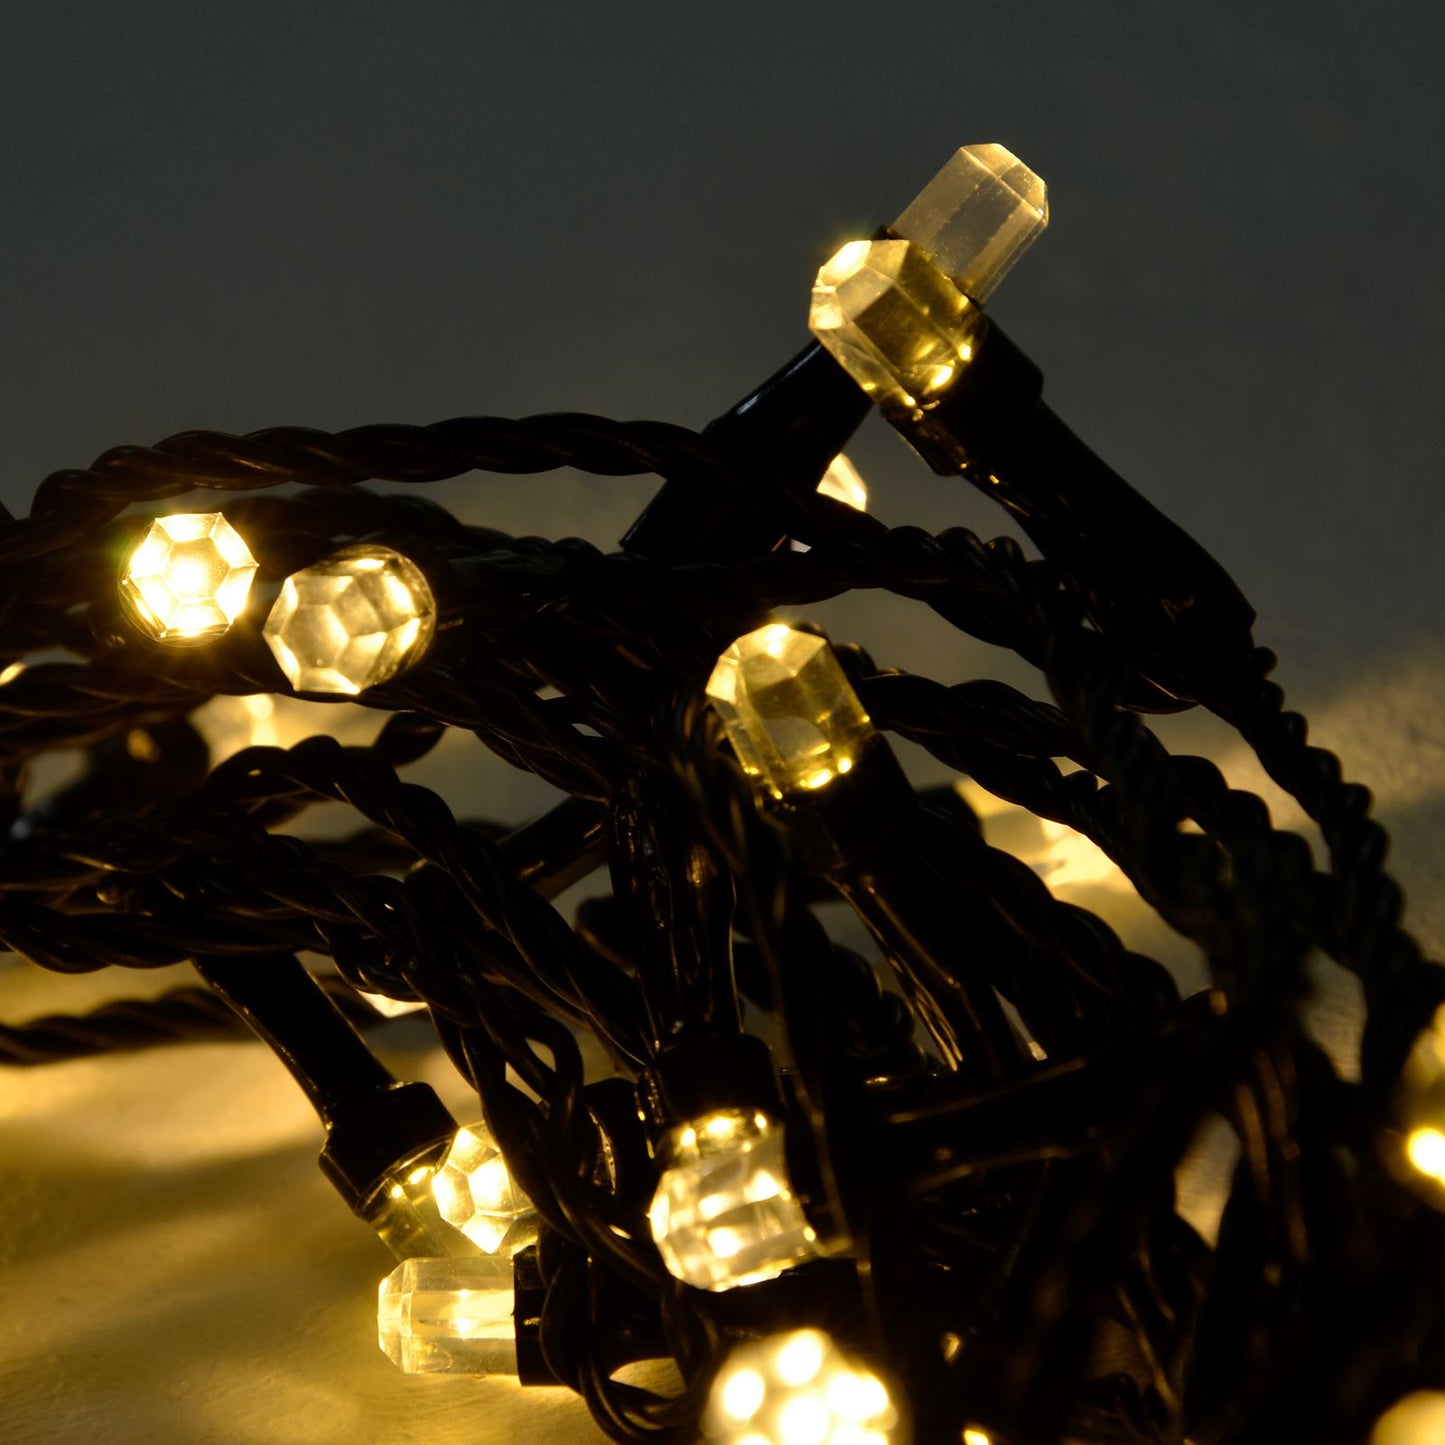 Mr Crimbo Multi Function LED Diamond Shaped Christmas Lights - MrCrimbo.co.uk -XS5042 - Warm White -christmas lighting